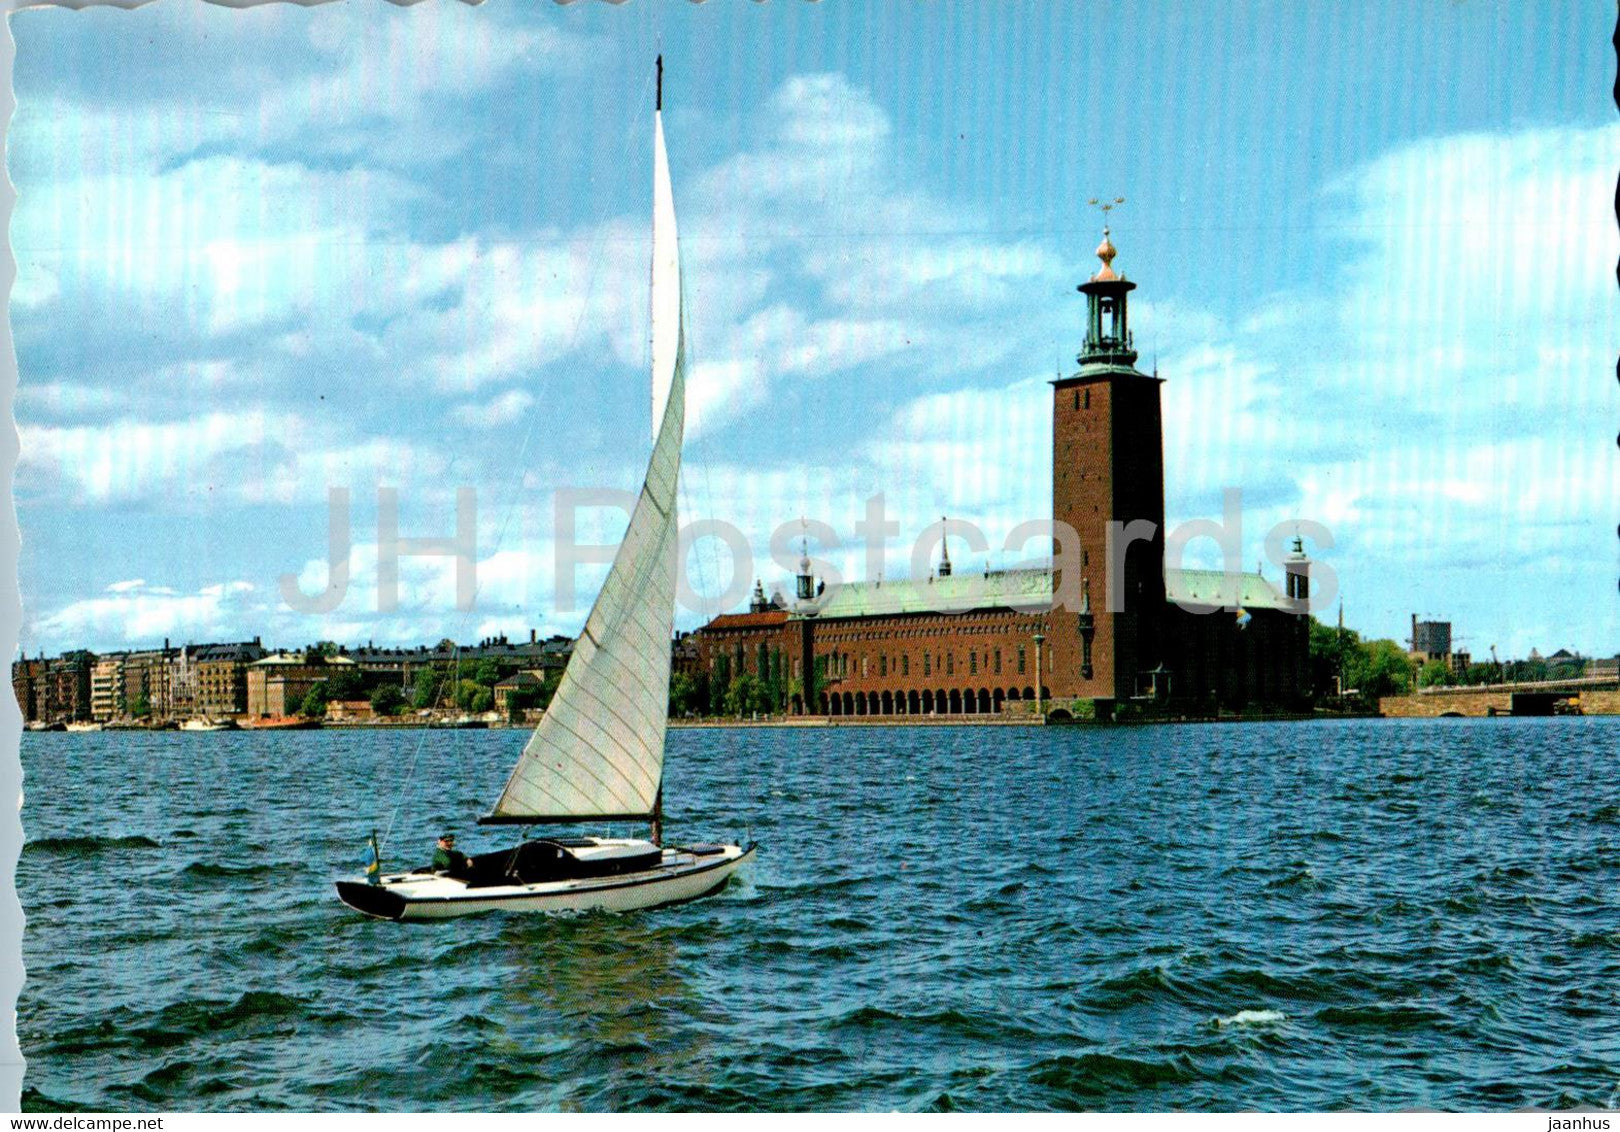 Stockholm - Stadshuset och Riddarfjarden - The City Hall - sailing boat - 130/148 - Sweden - unused - JH Postcards